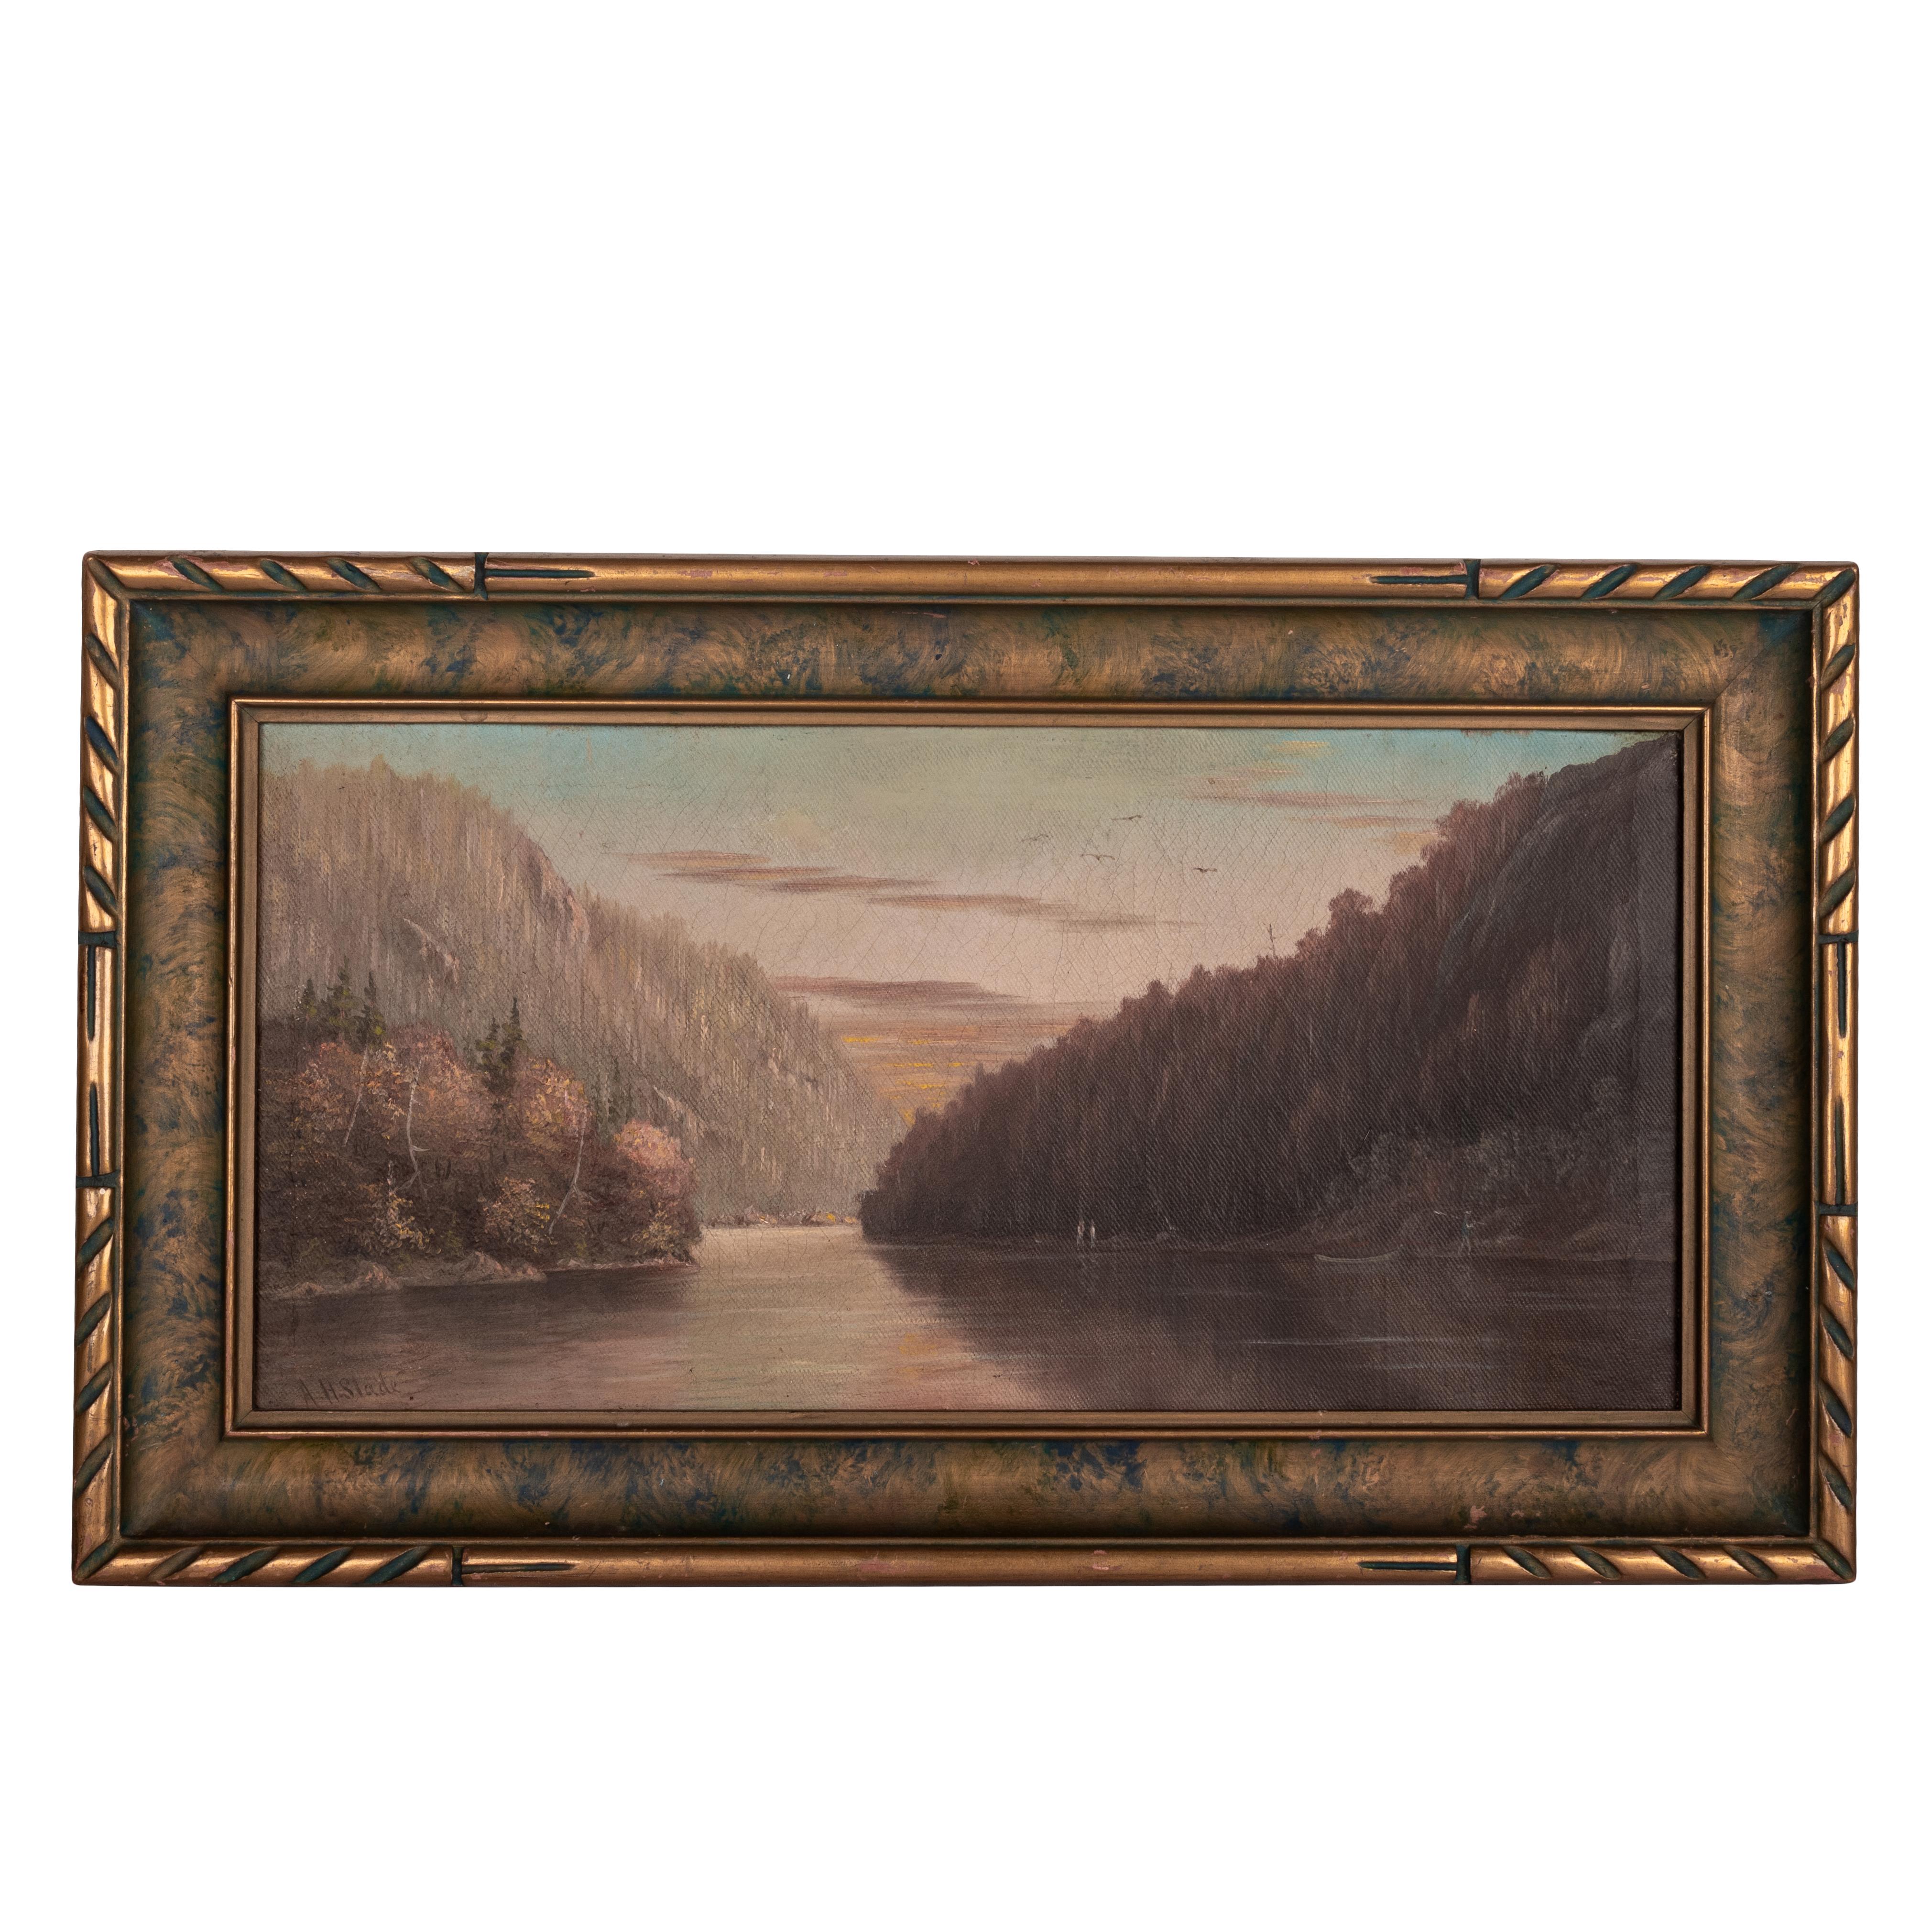  Albert Horatio Slade Landscape Painting – Antike amerikanische realistische kalifornische Flusslandschaft des 19. Jahrhunderts, Öl auf Leinwand 1888